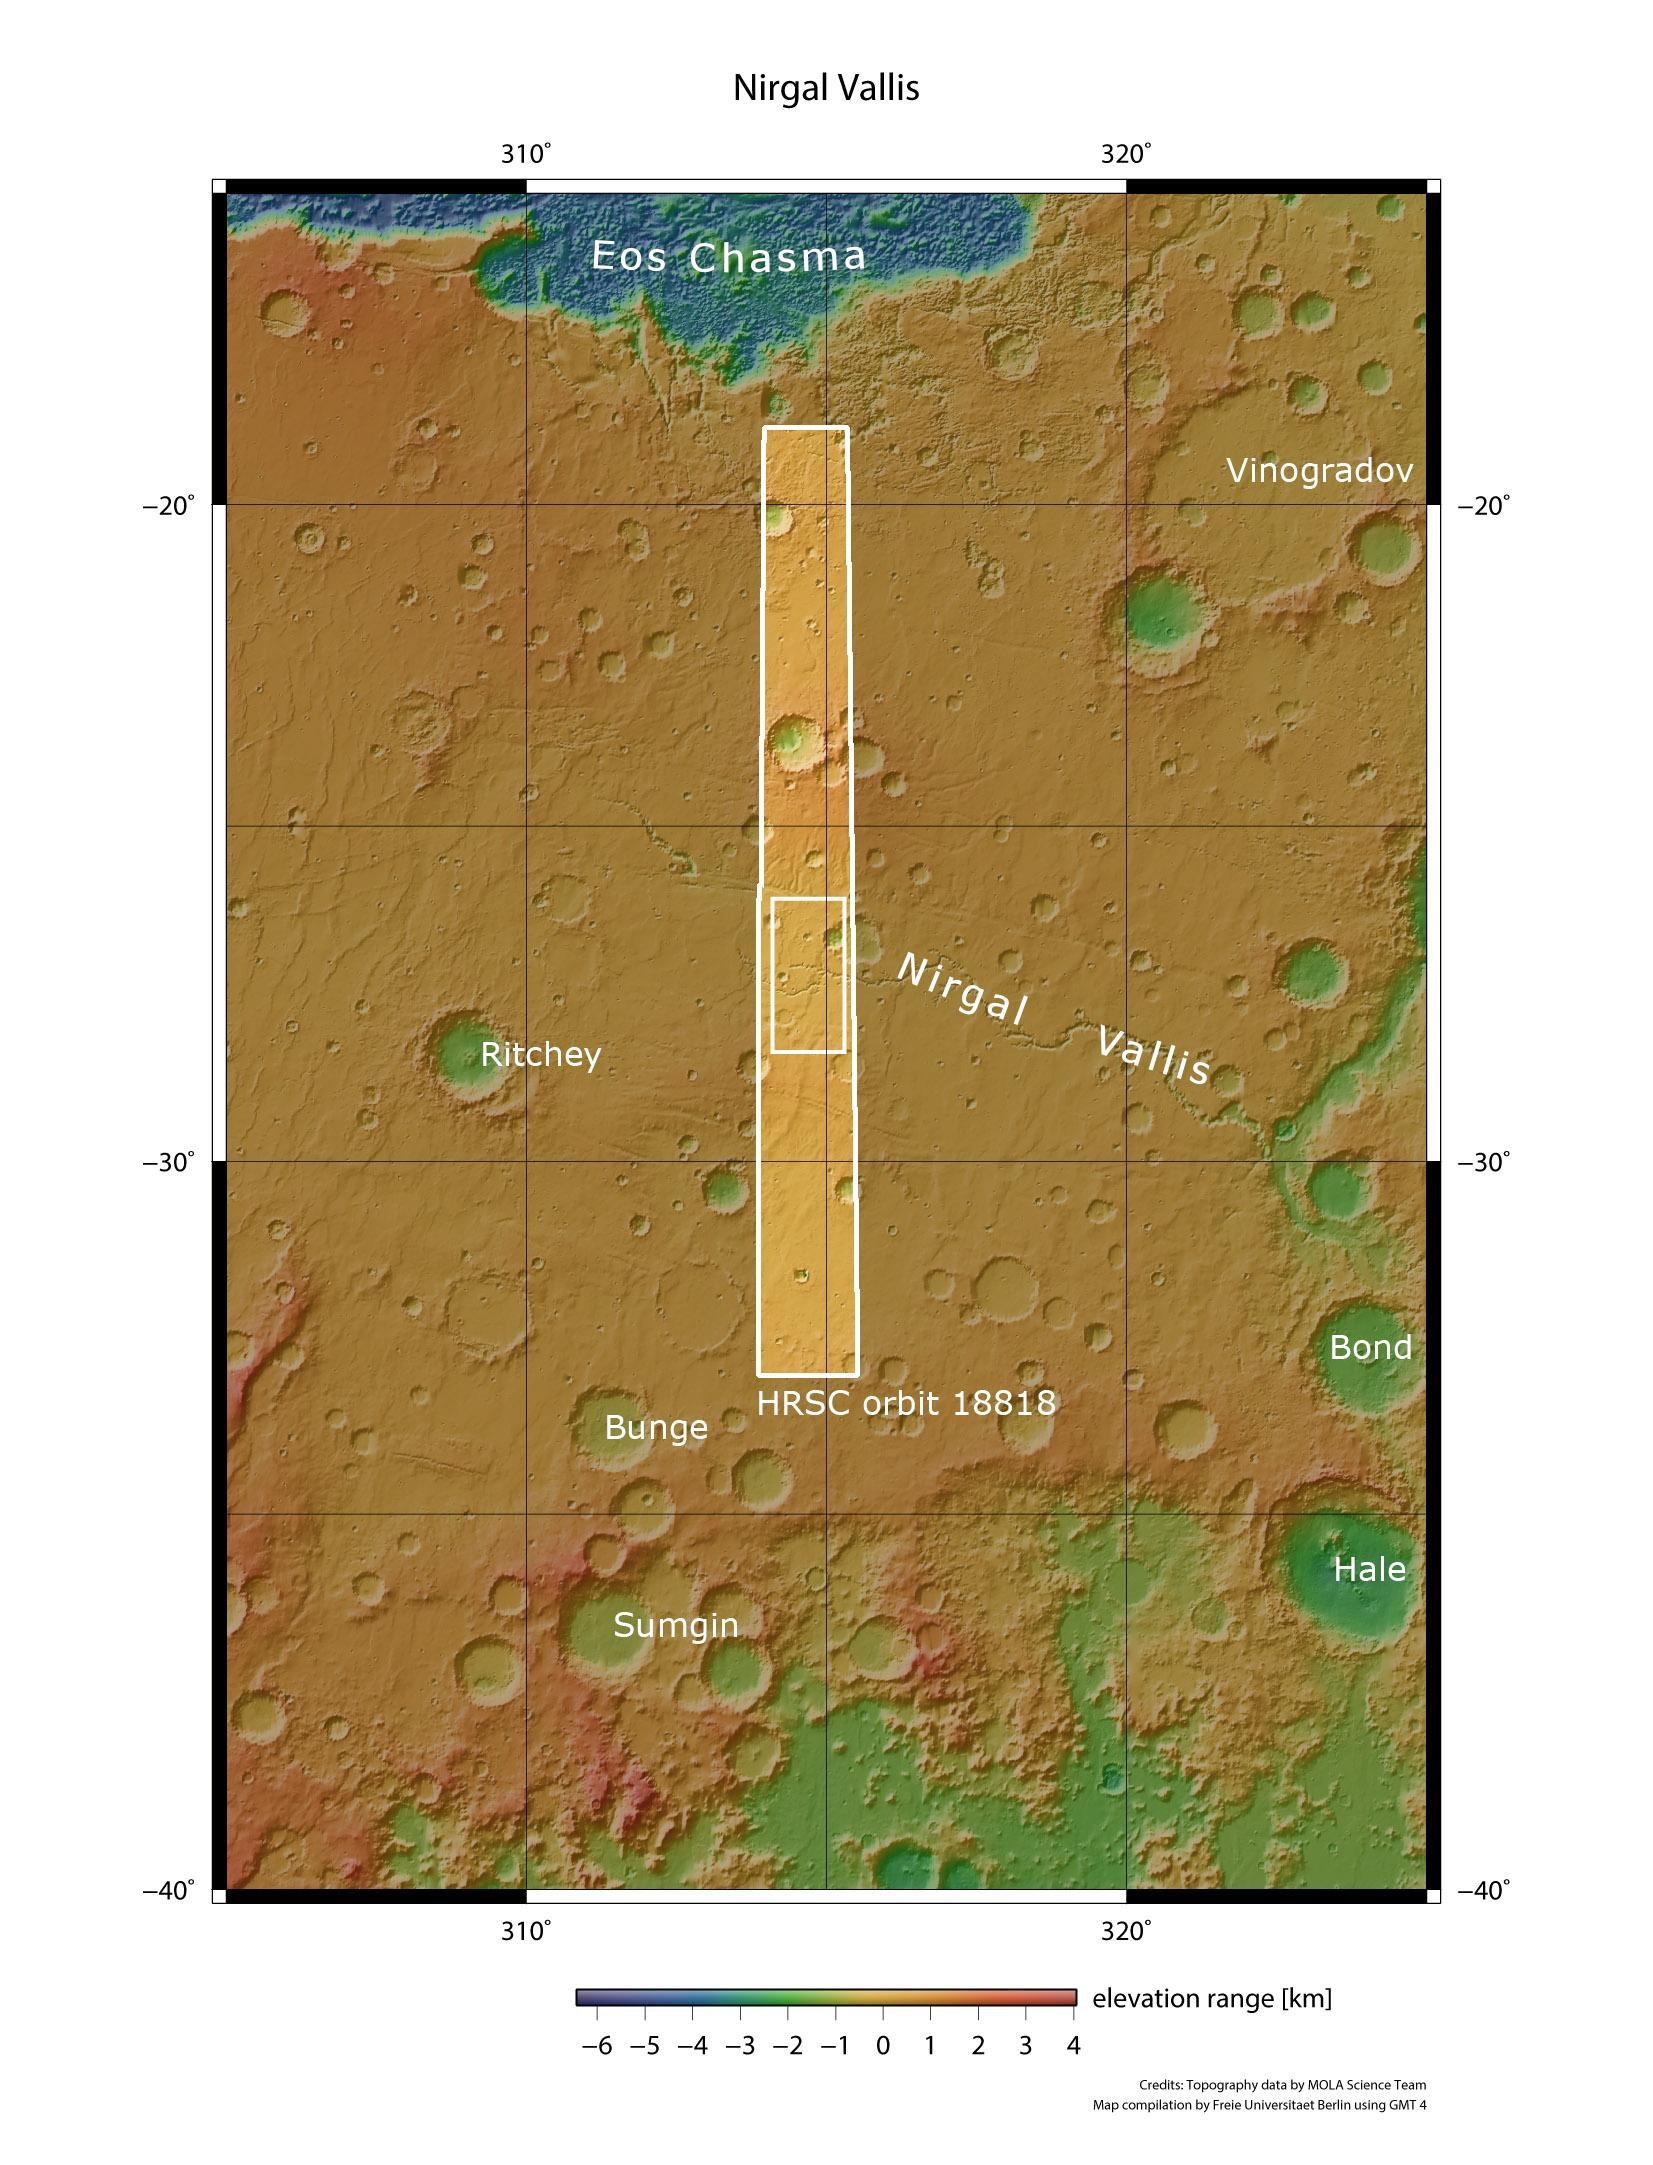 Topographische Übersicht über die Hochlandregion südöstlich der Valles Marineris